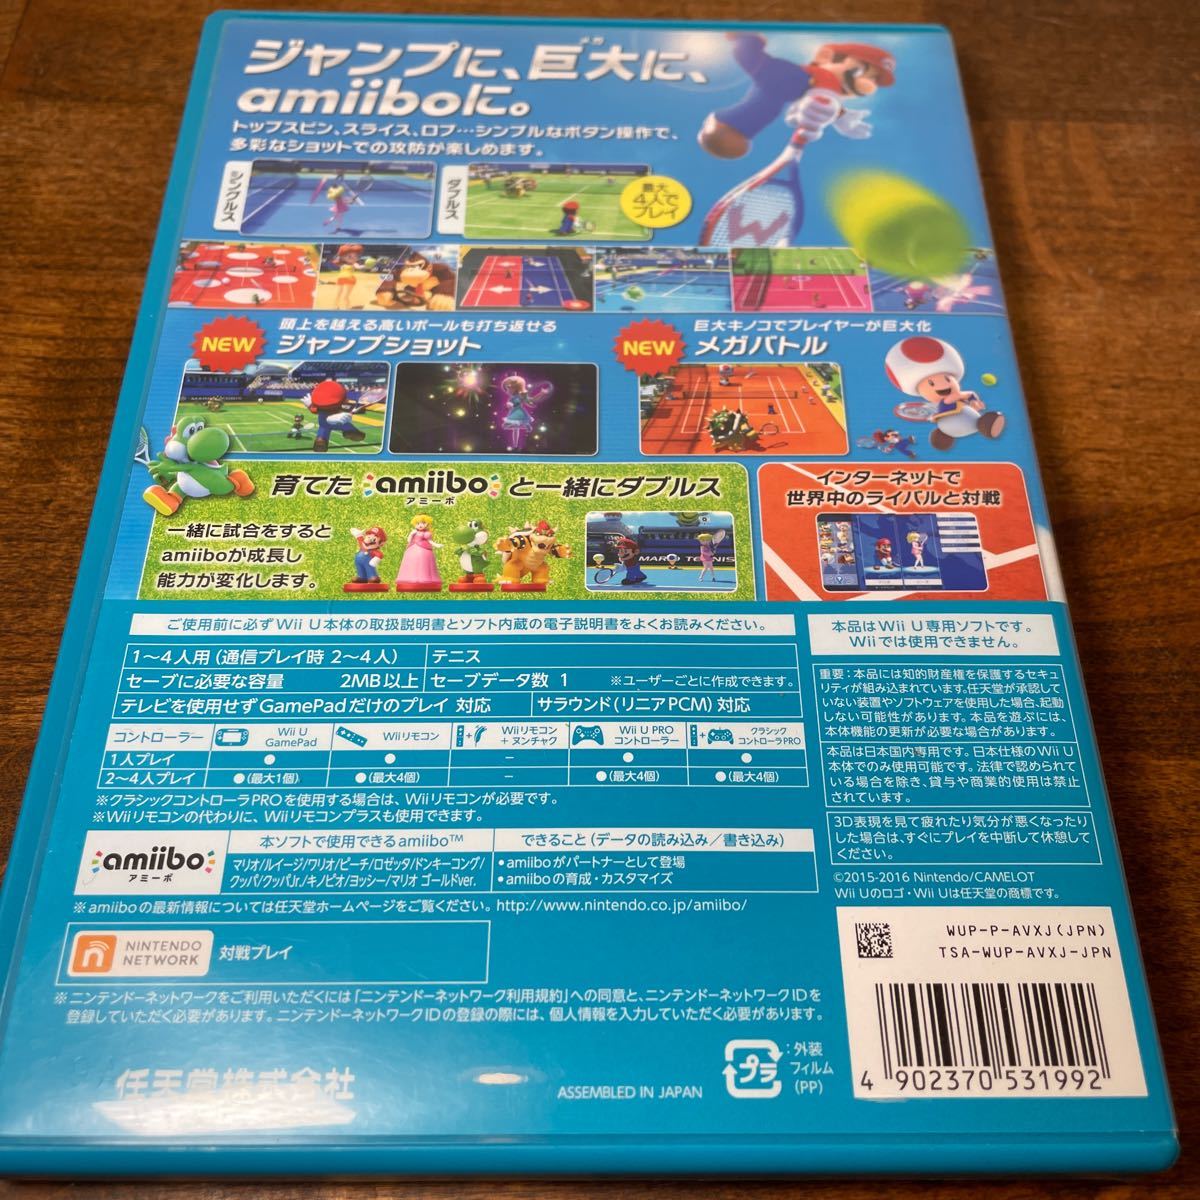 マリオテニスウルトラスマッシュ WiiU ソフト